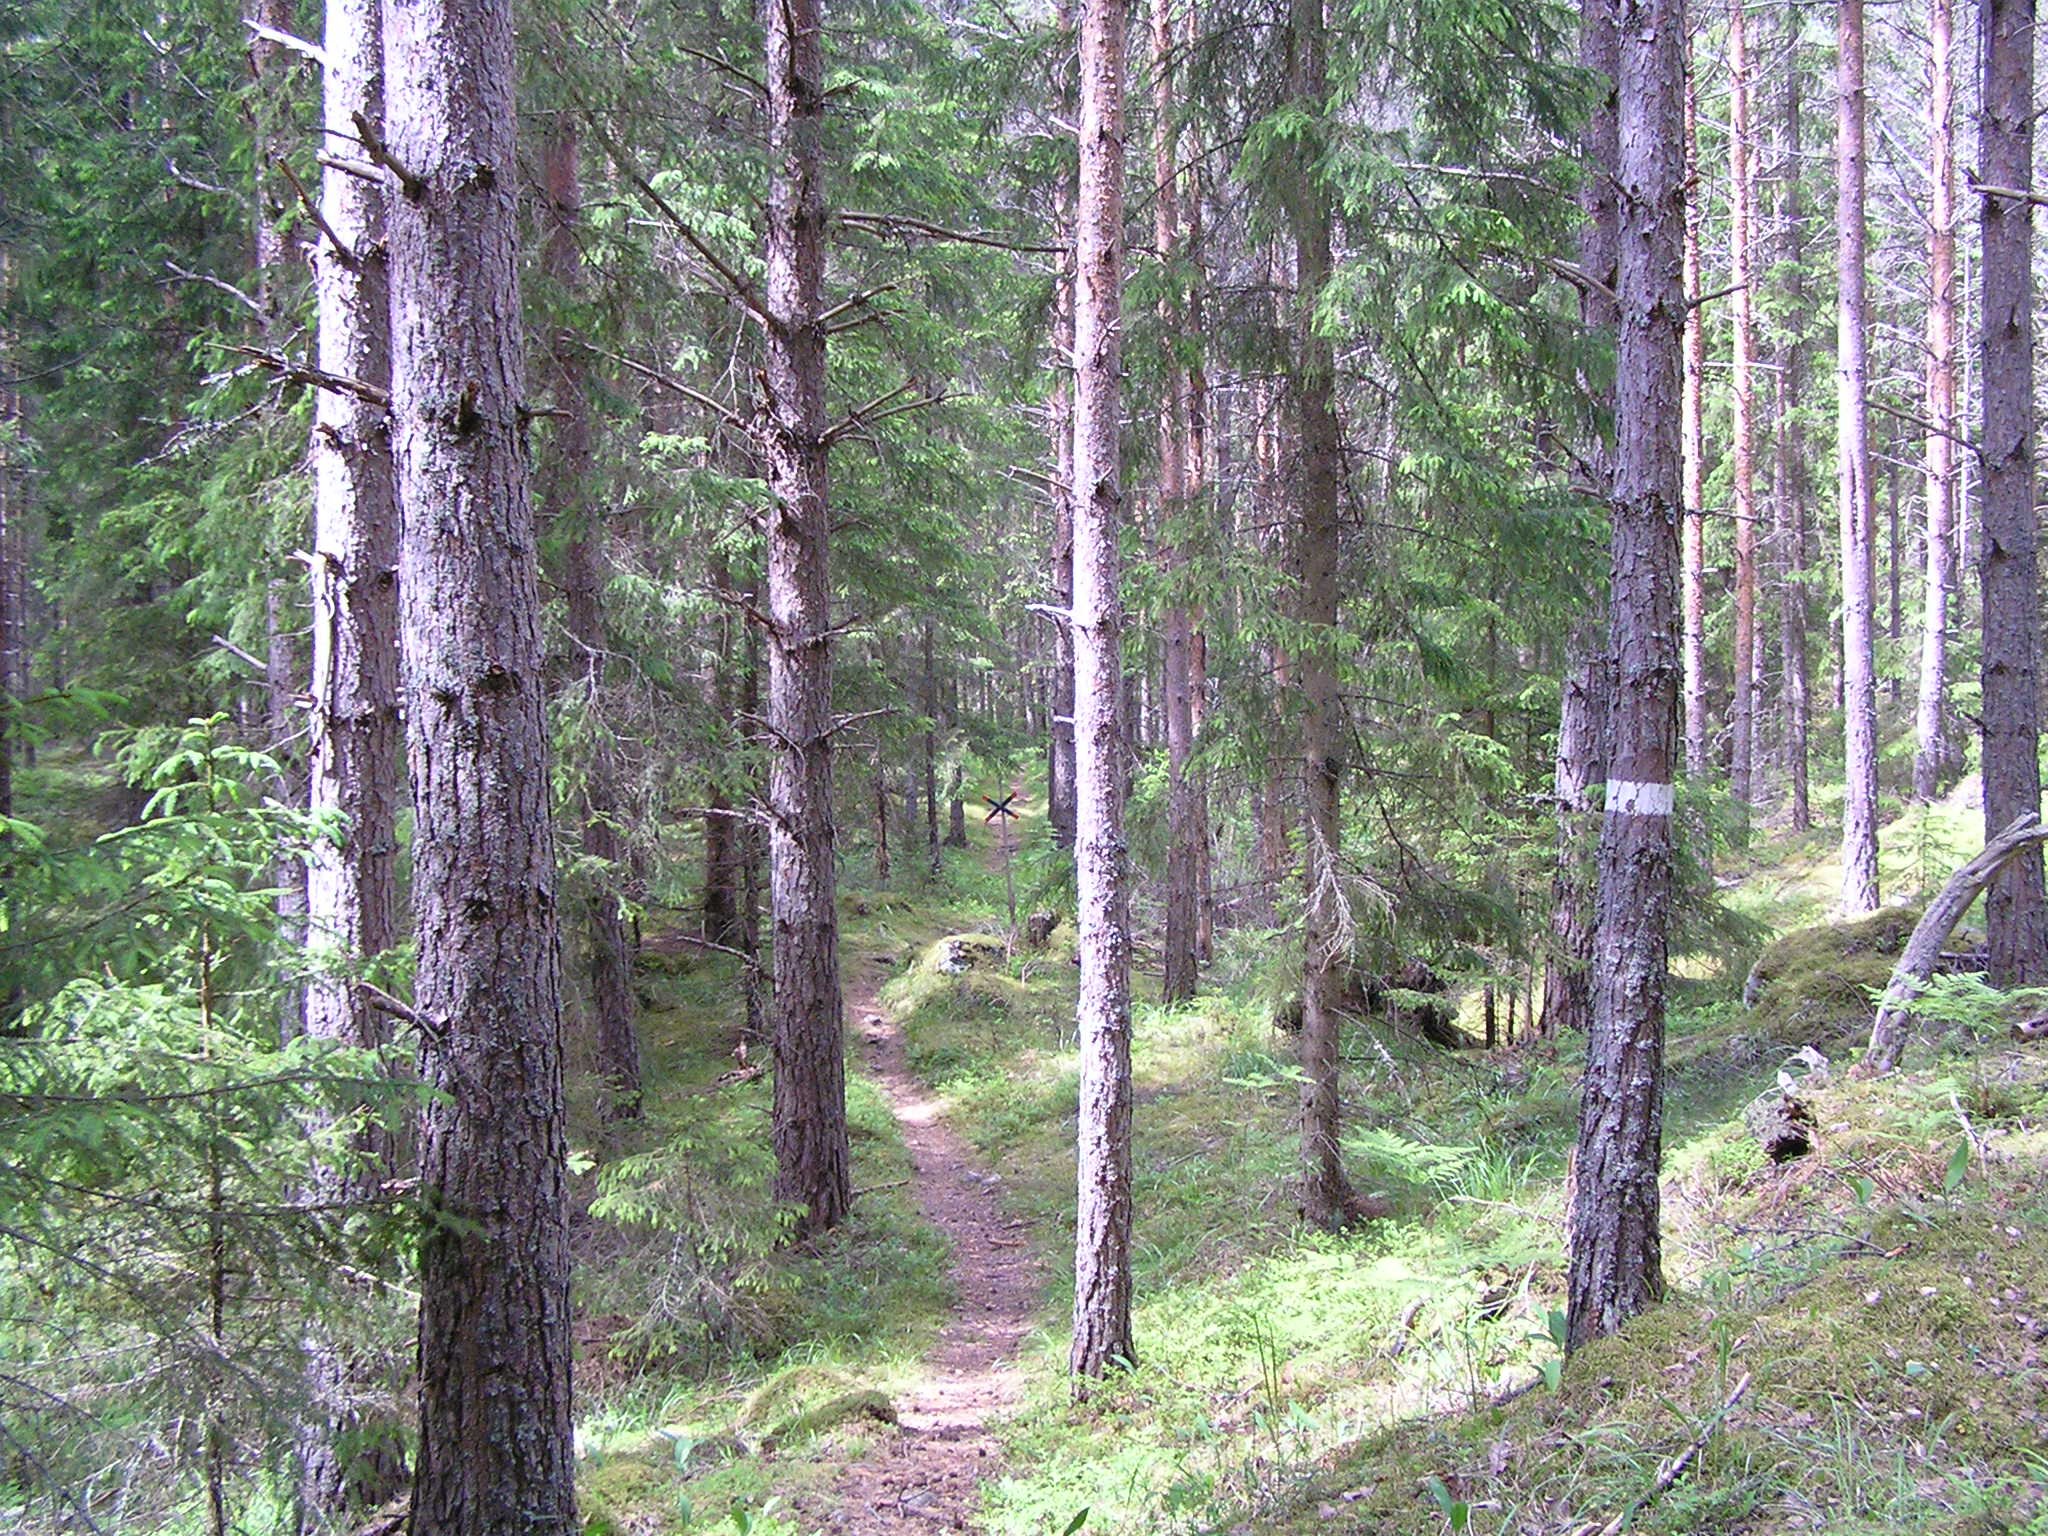 En smal stig går genom skogen. På flera trädstammar finns vita stigmarkeringar målade.